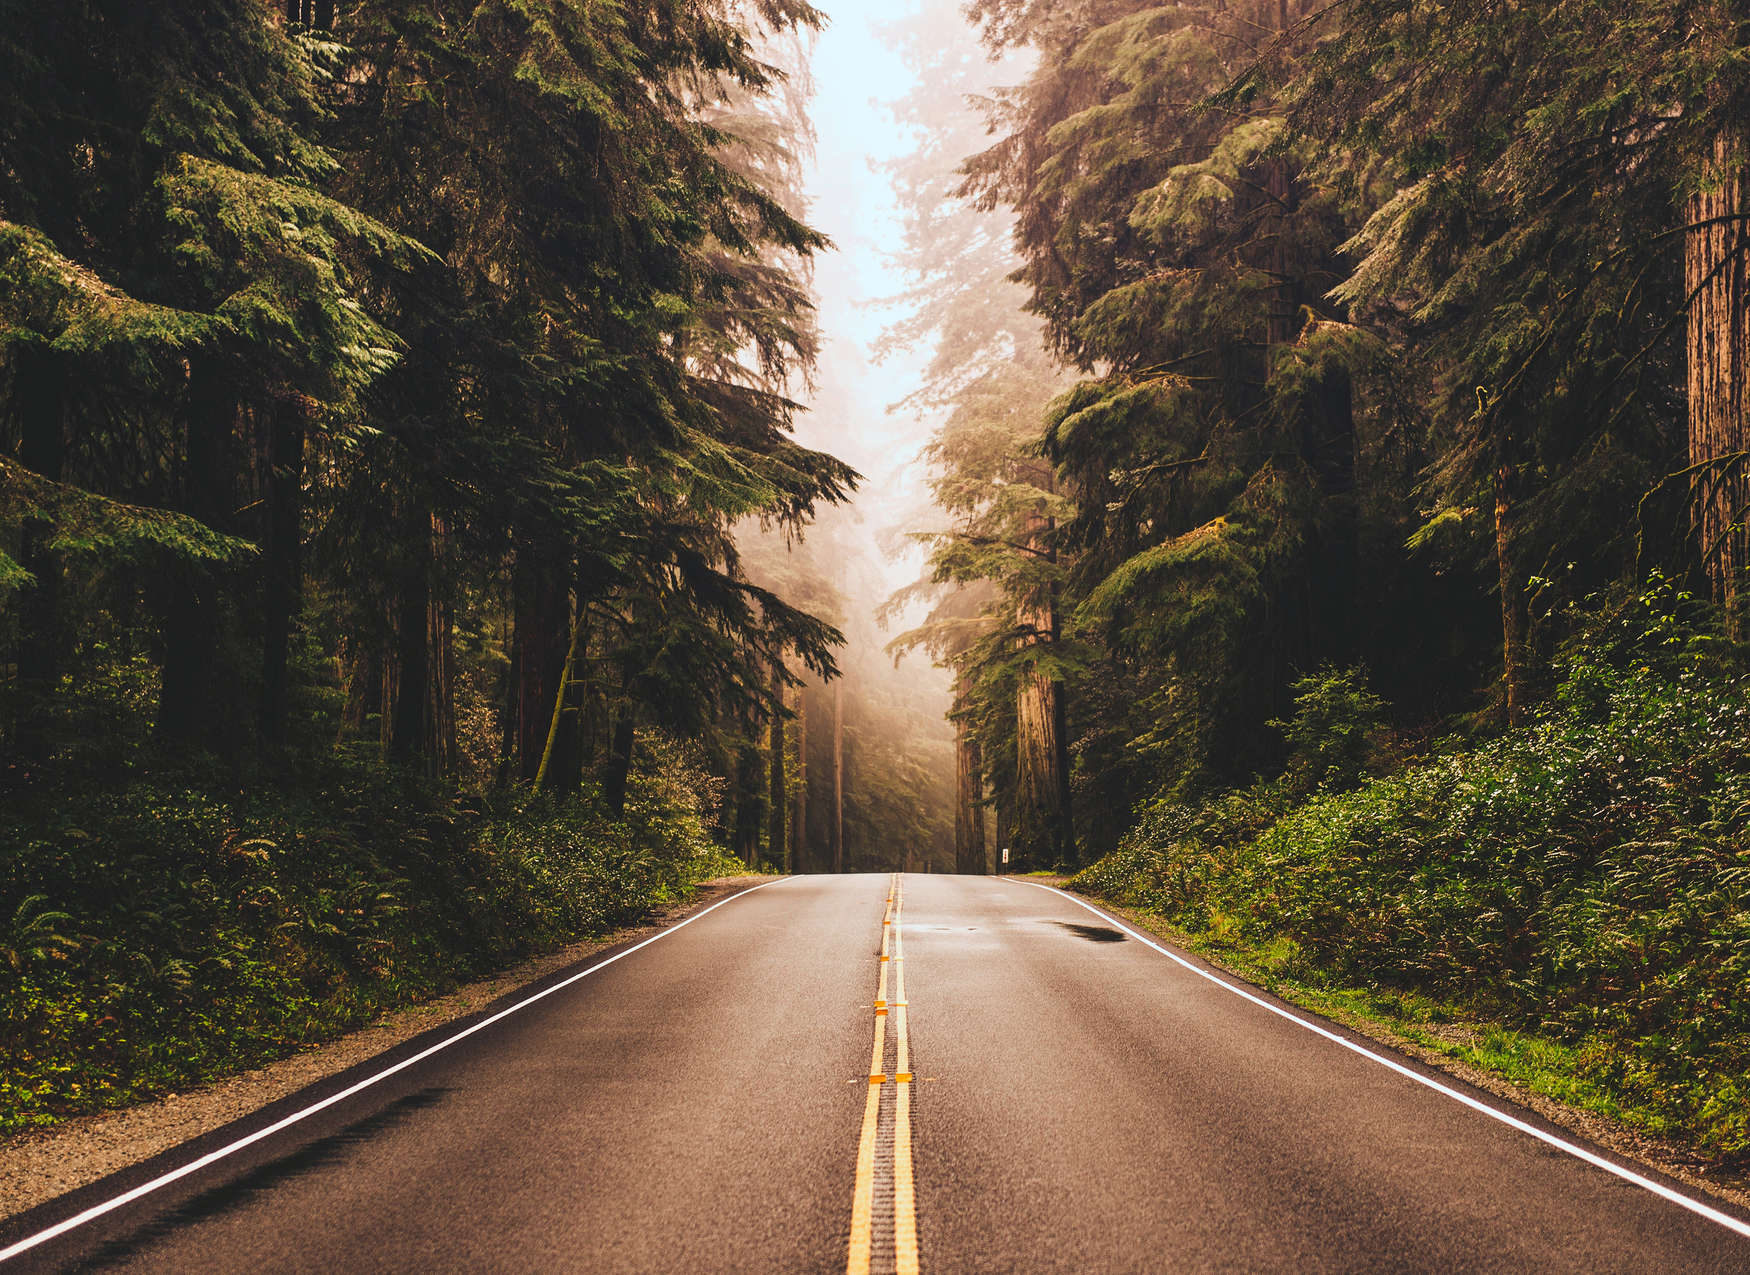             Papier peint American Highway dans la forêt - marron, vert, gris
        